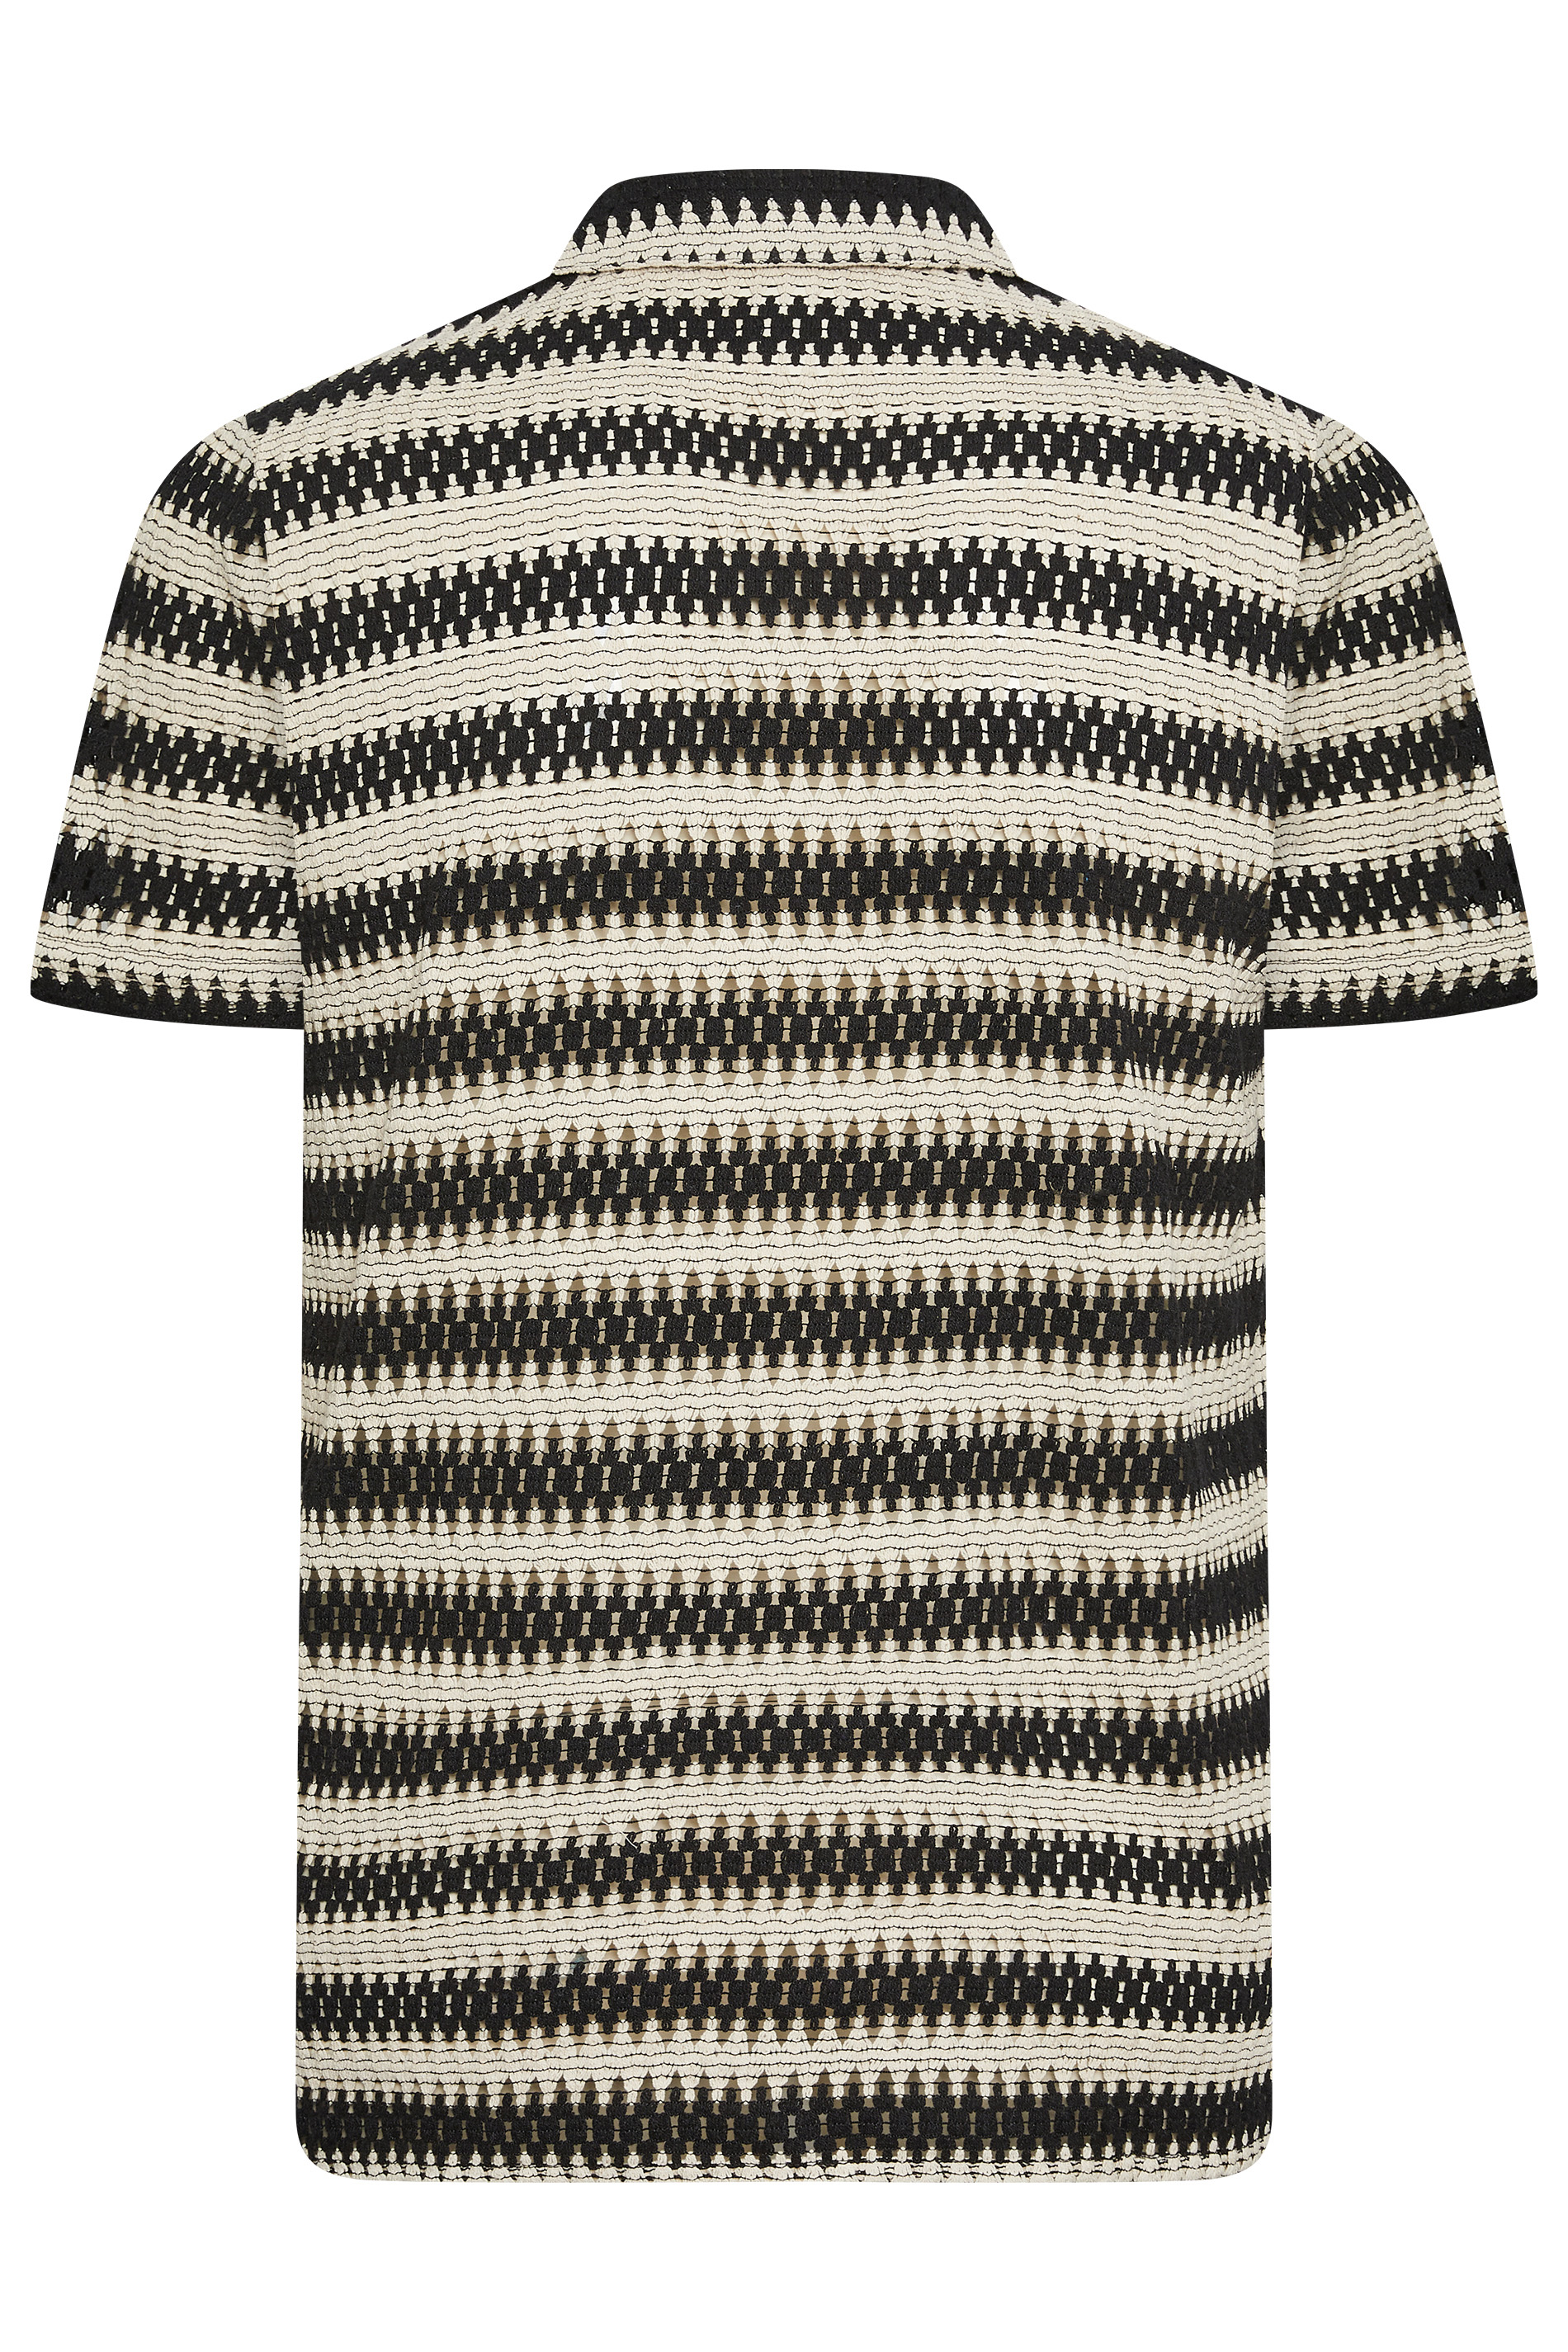 BadRhino Big & Tall Black Textured Crochet Short Sleeve Shirt | BadRhino 3